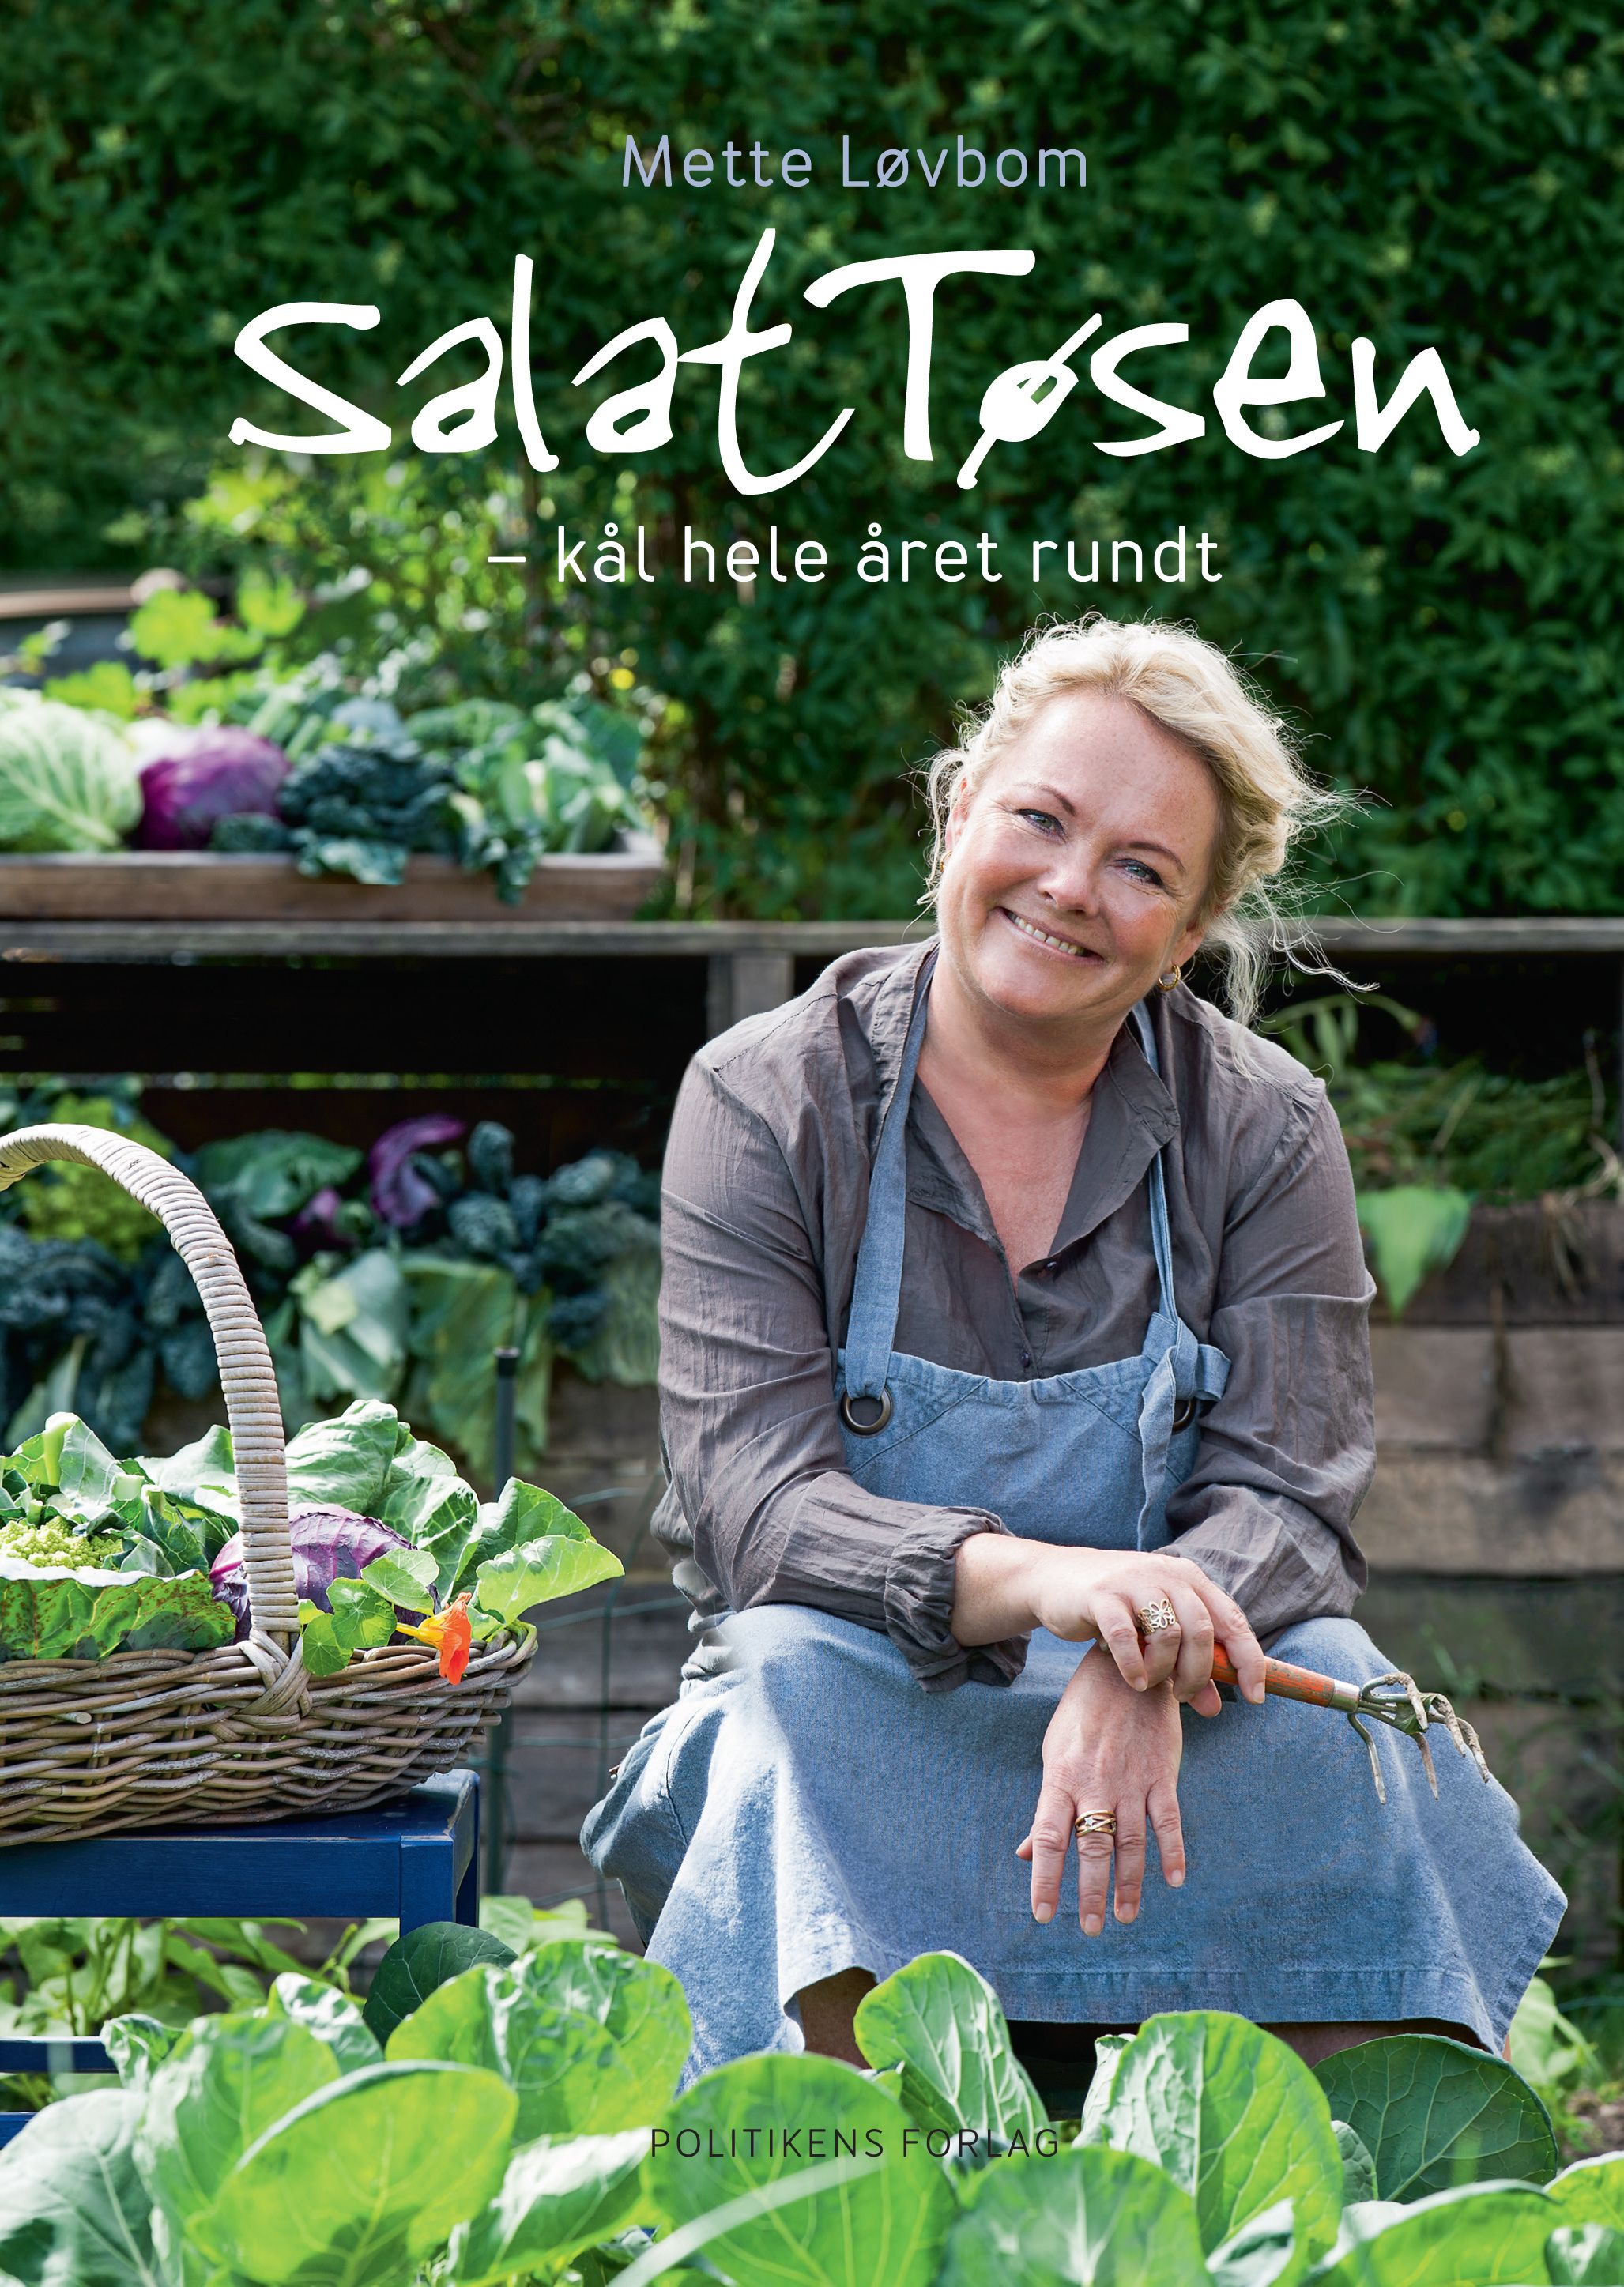 Salattøsen - Kål hele året rundt, eBook by Mette Løvbom